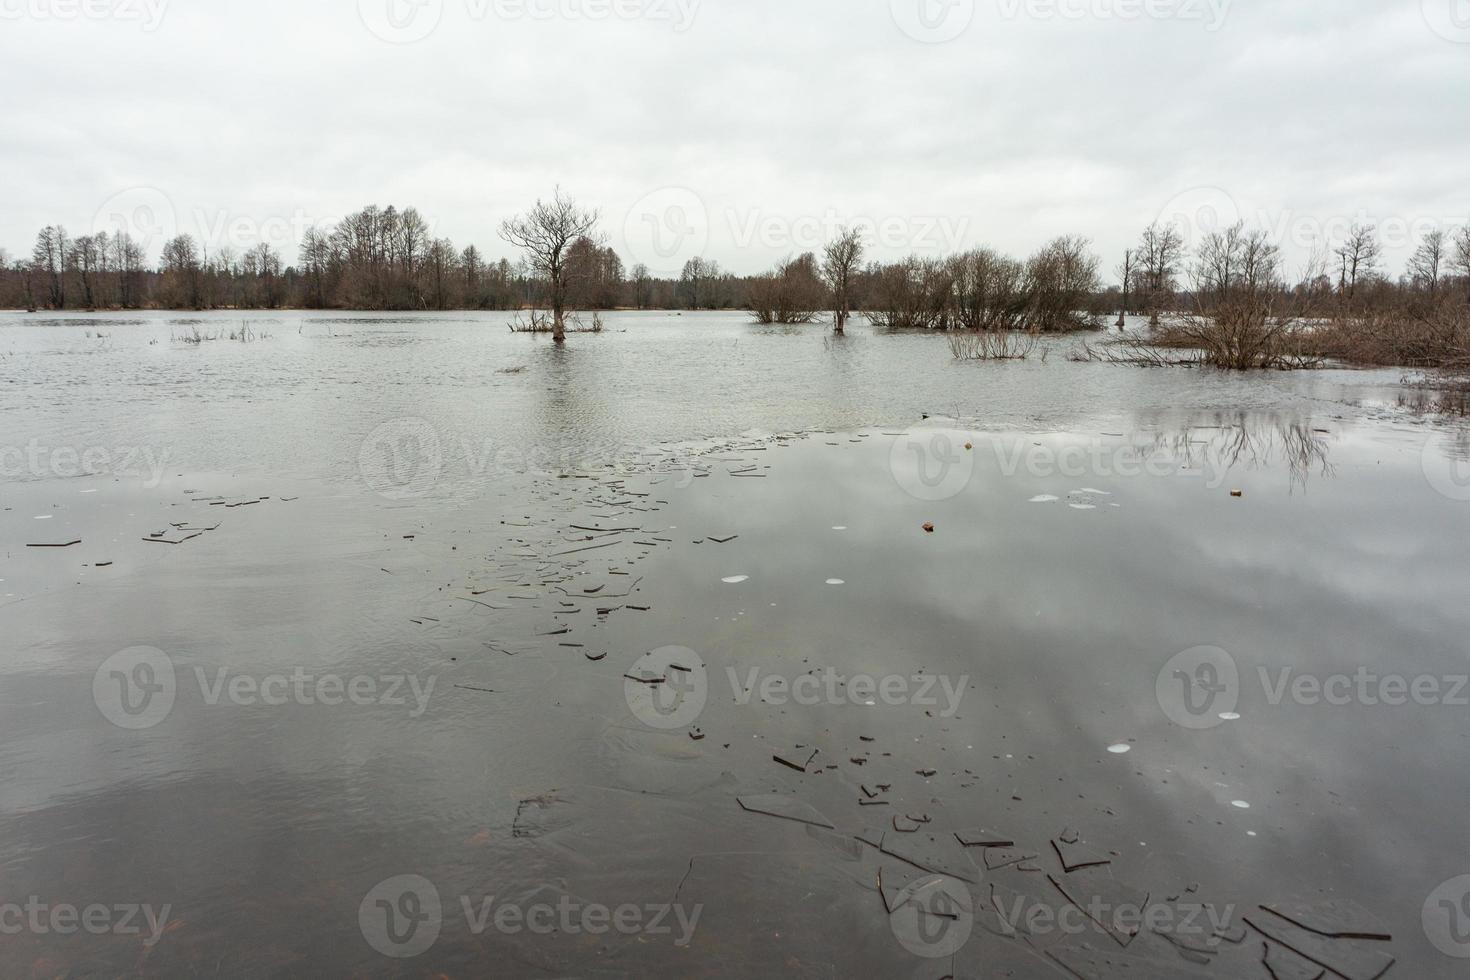 soomaa nationaal park in overstromingen foto